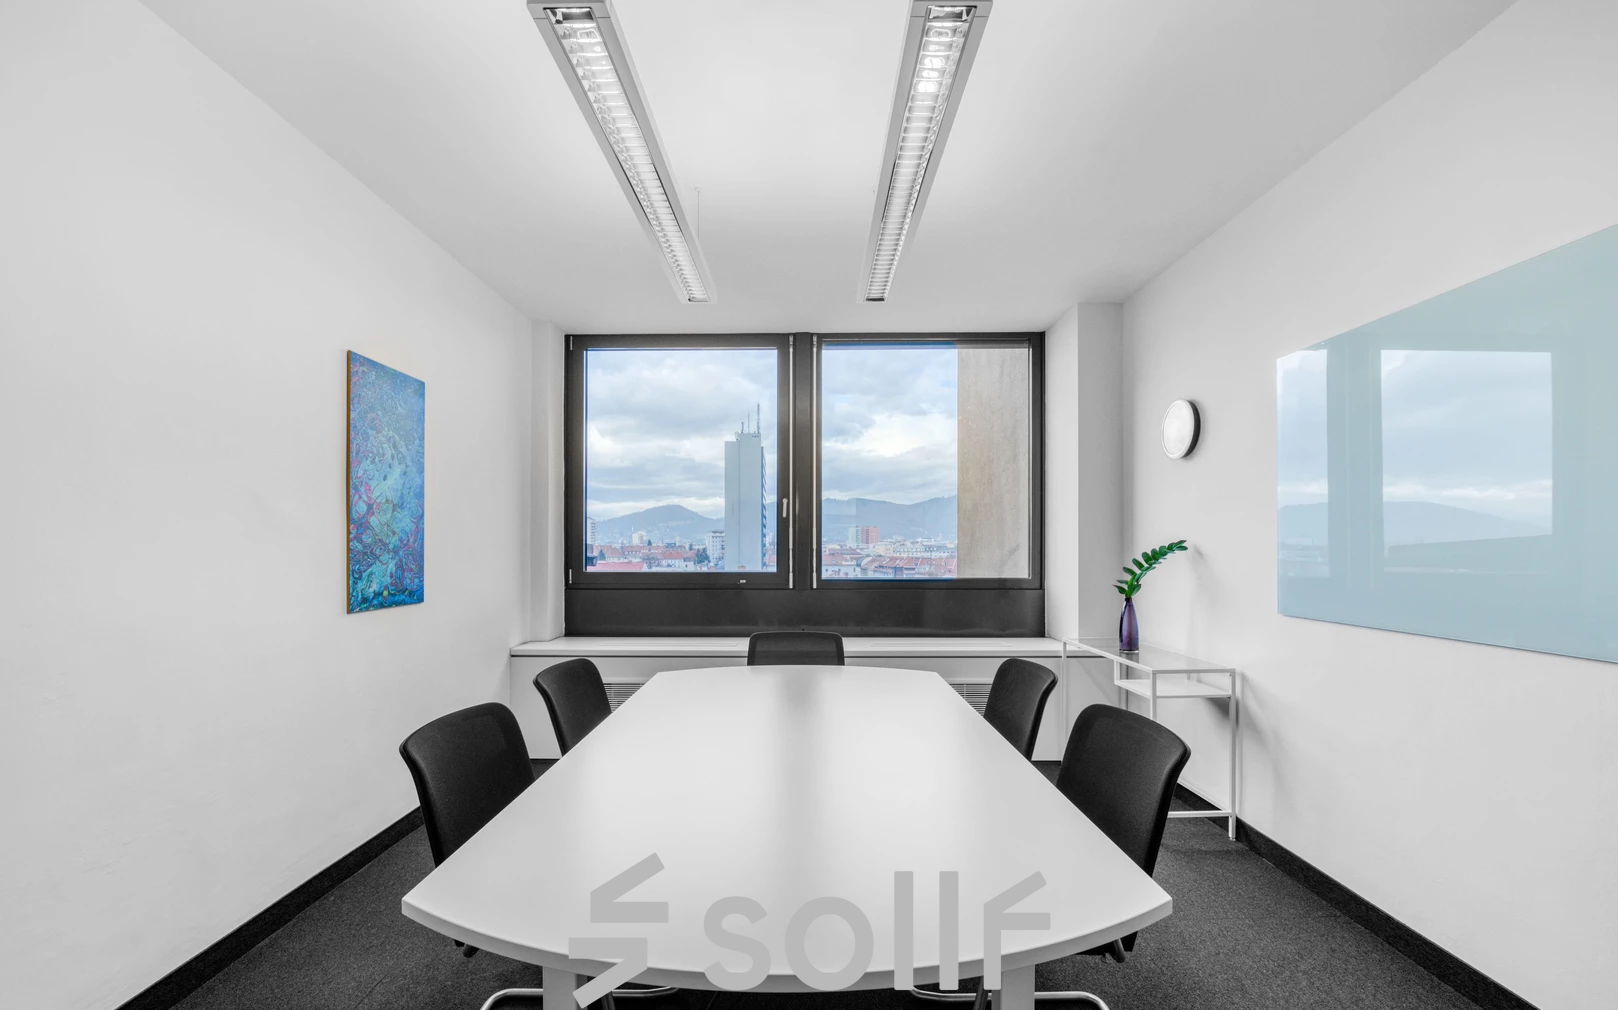 Heller und moderner Besprechungsraum mit großem Fensterblick in Brückenkopfgasse 1, ideal für ein Büroraum mieten in Graz.